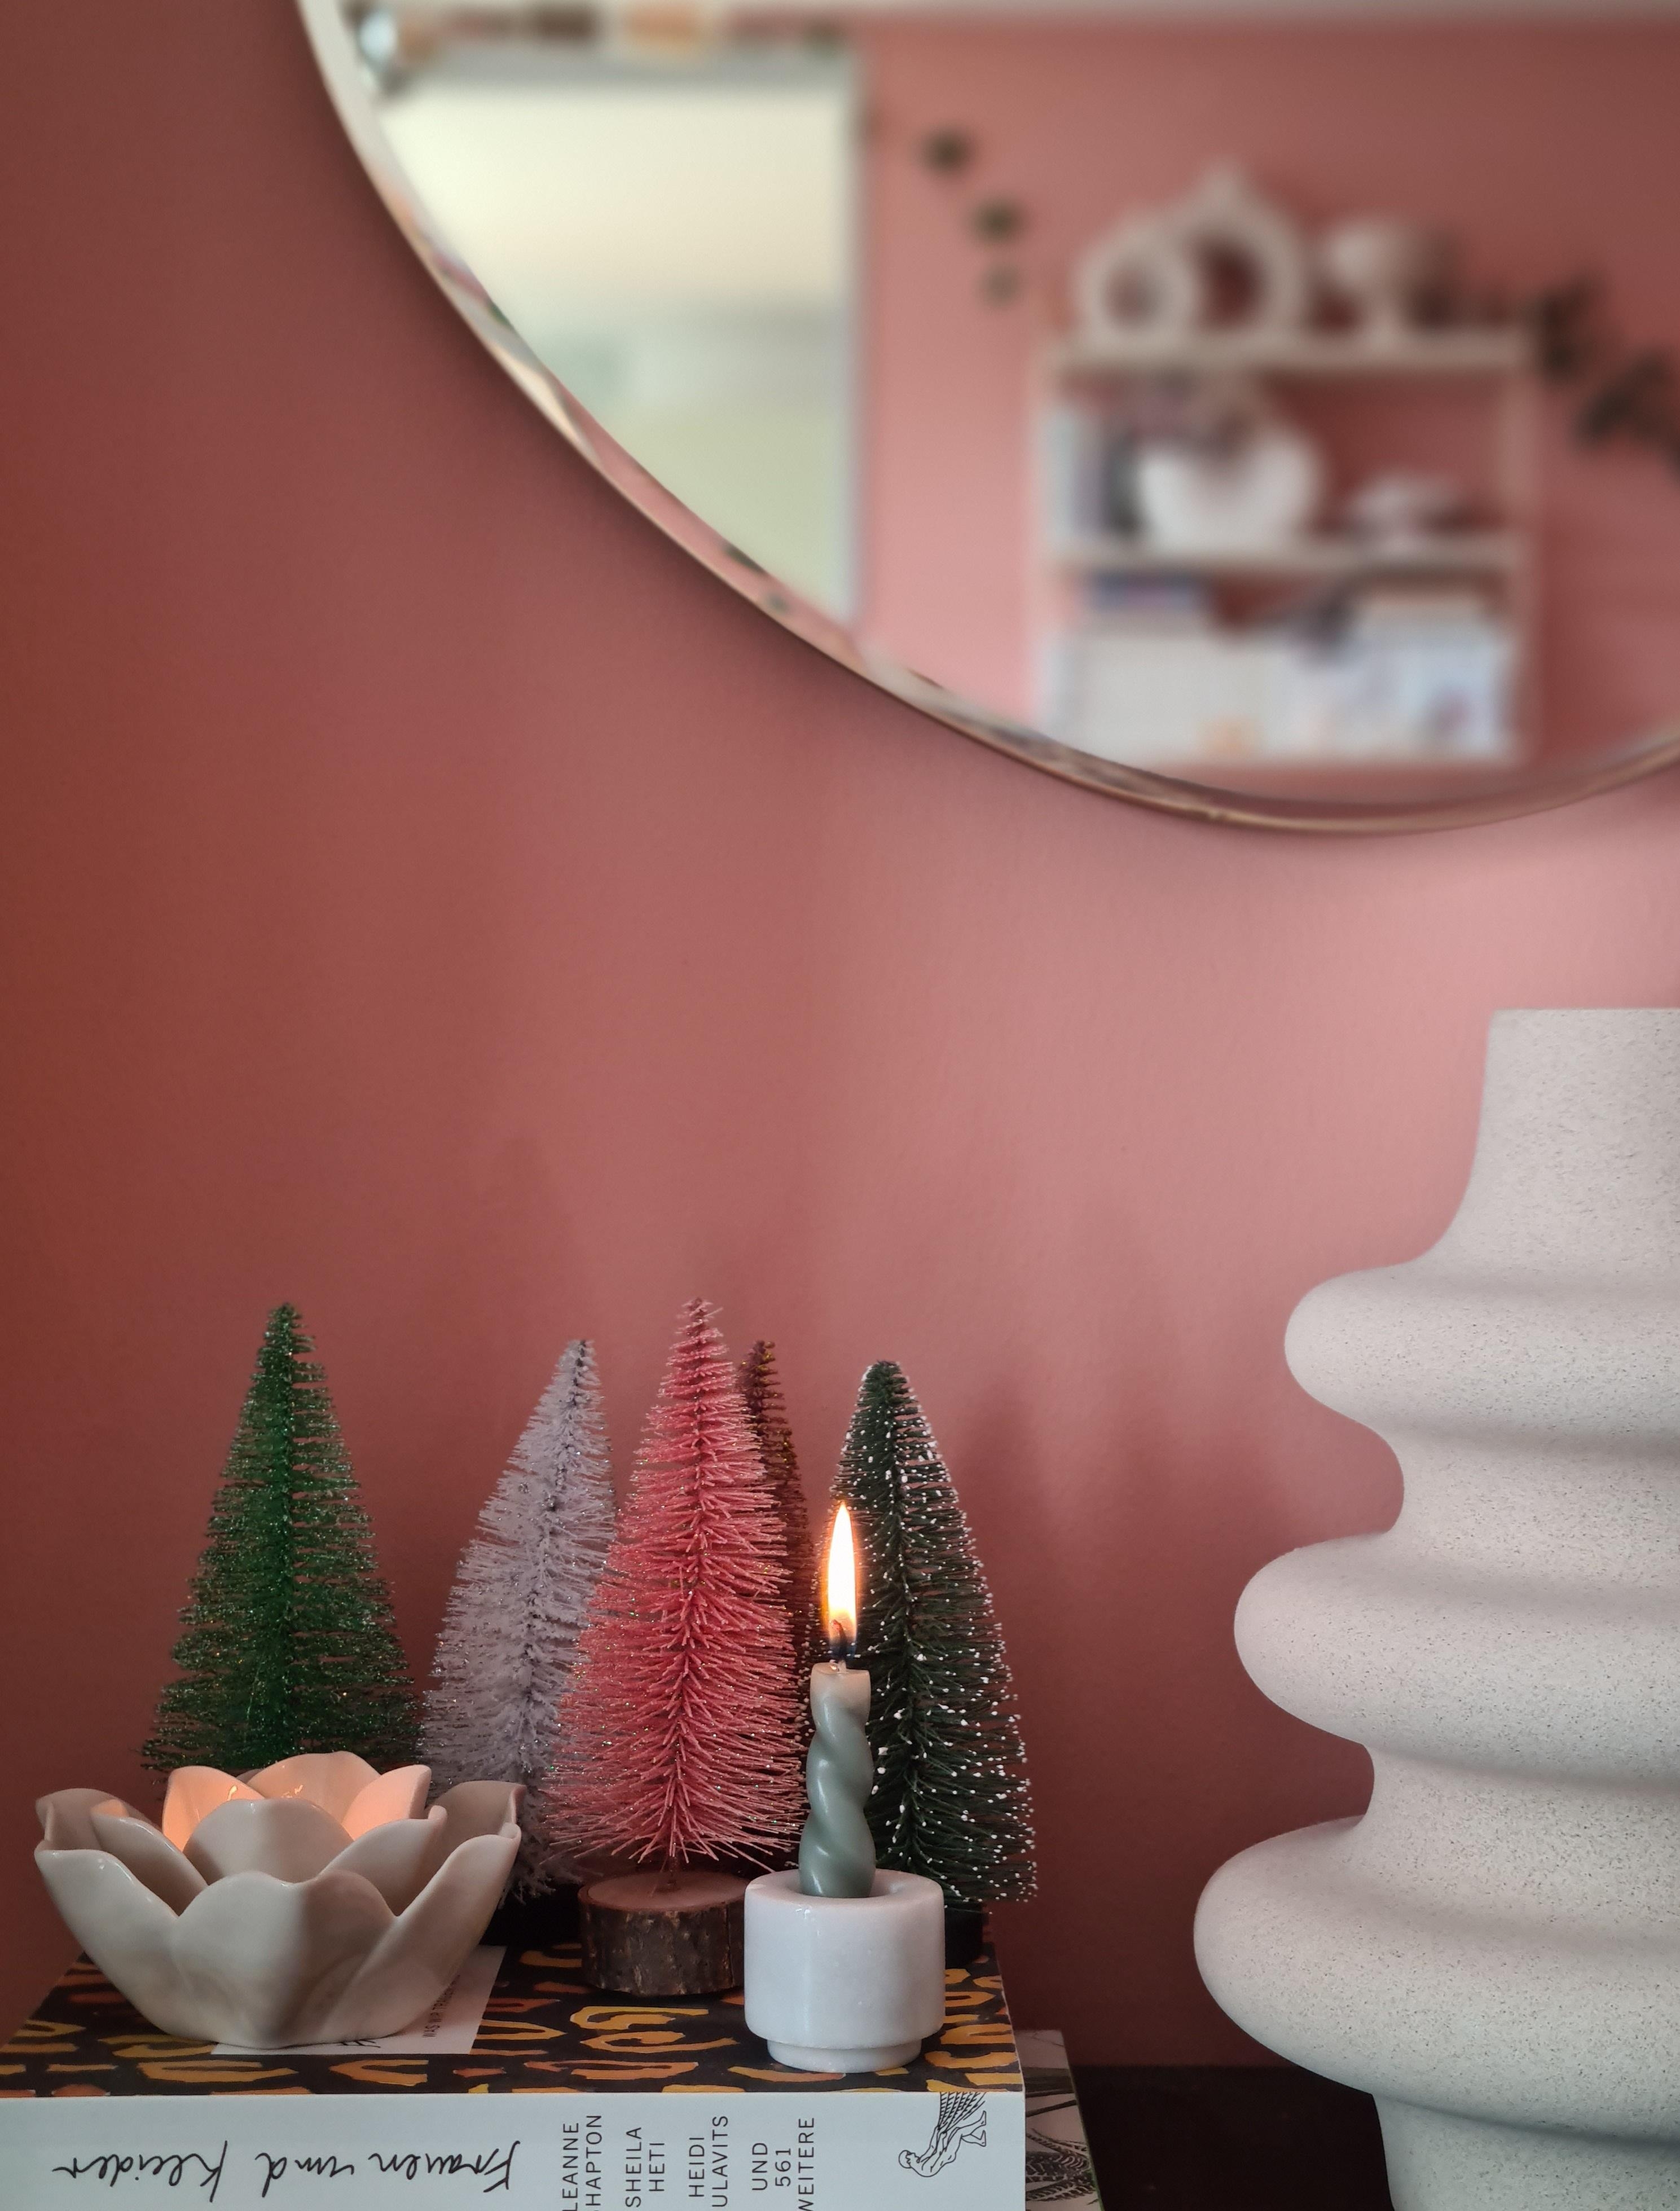 Langsam in Weihnachtsstimmung... 
#kerzen #wandfarbe #weihnachtsdeko